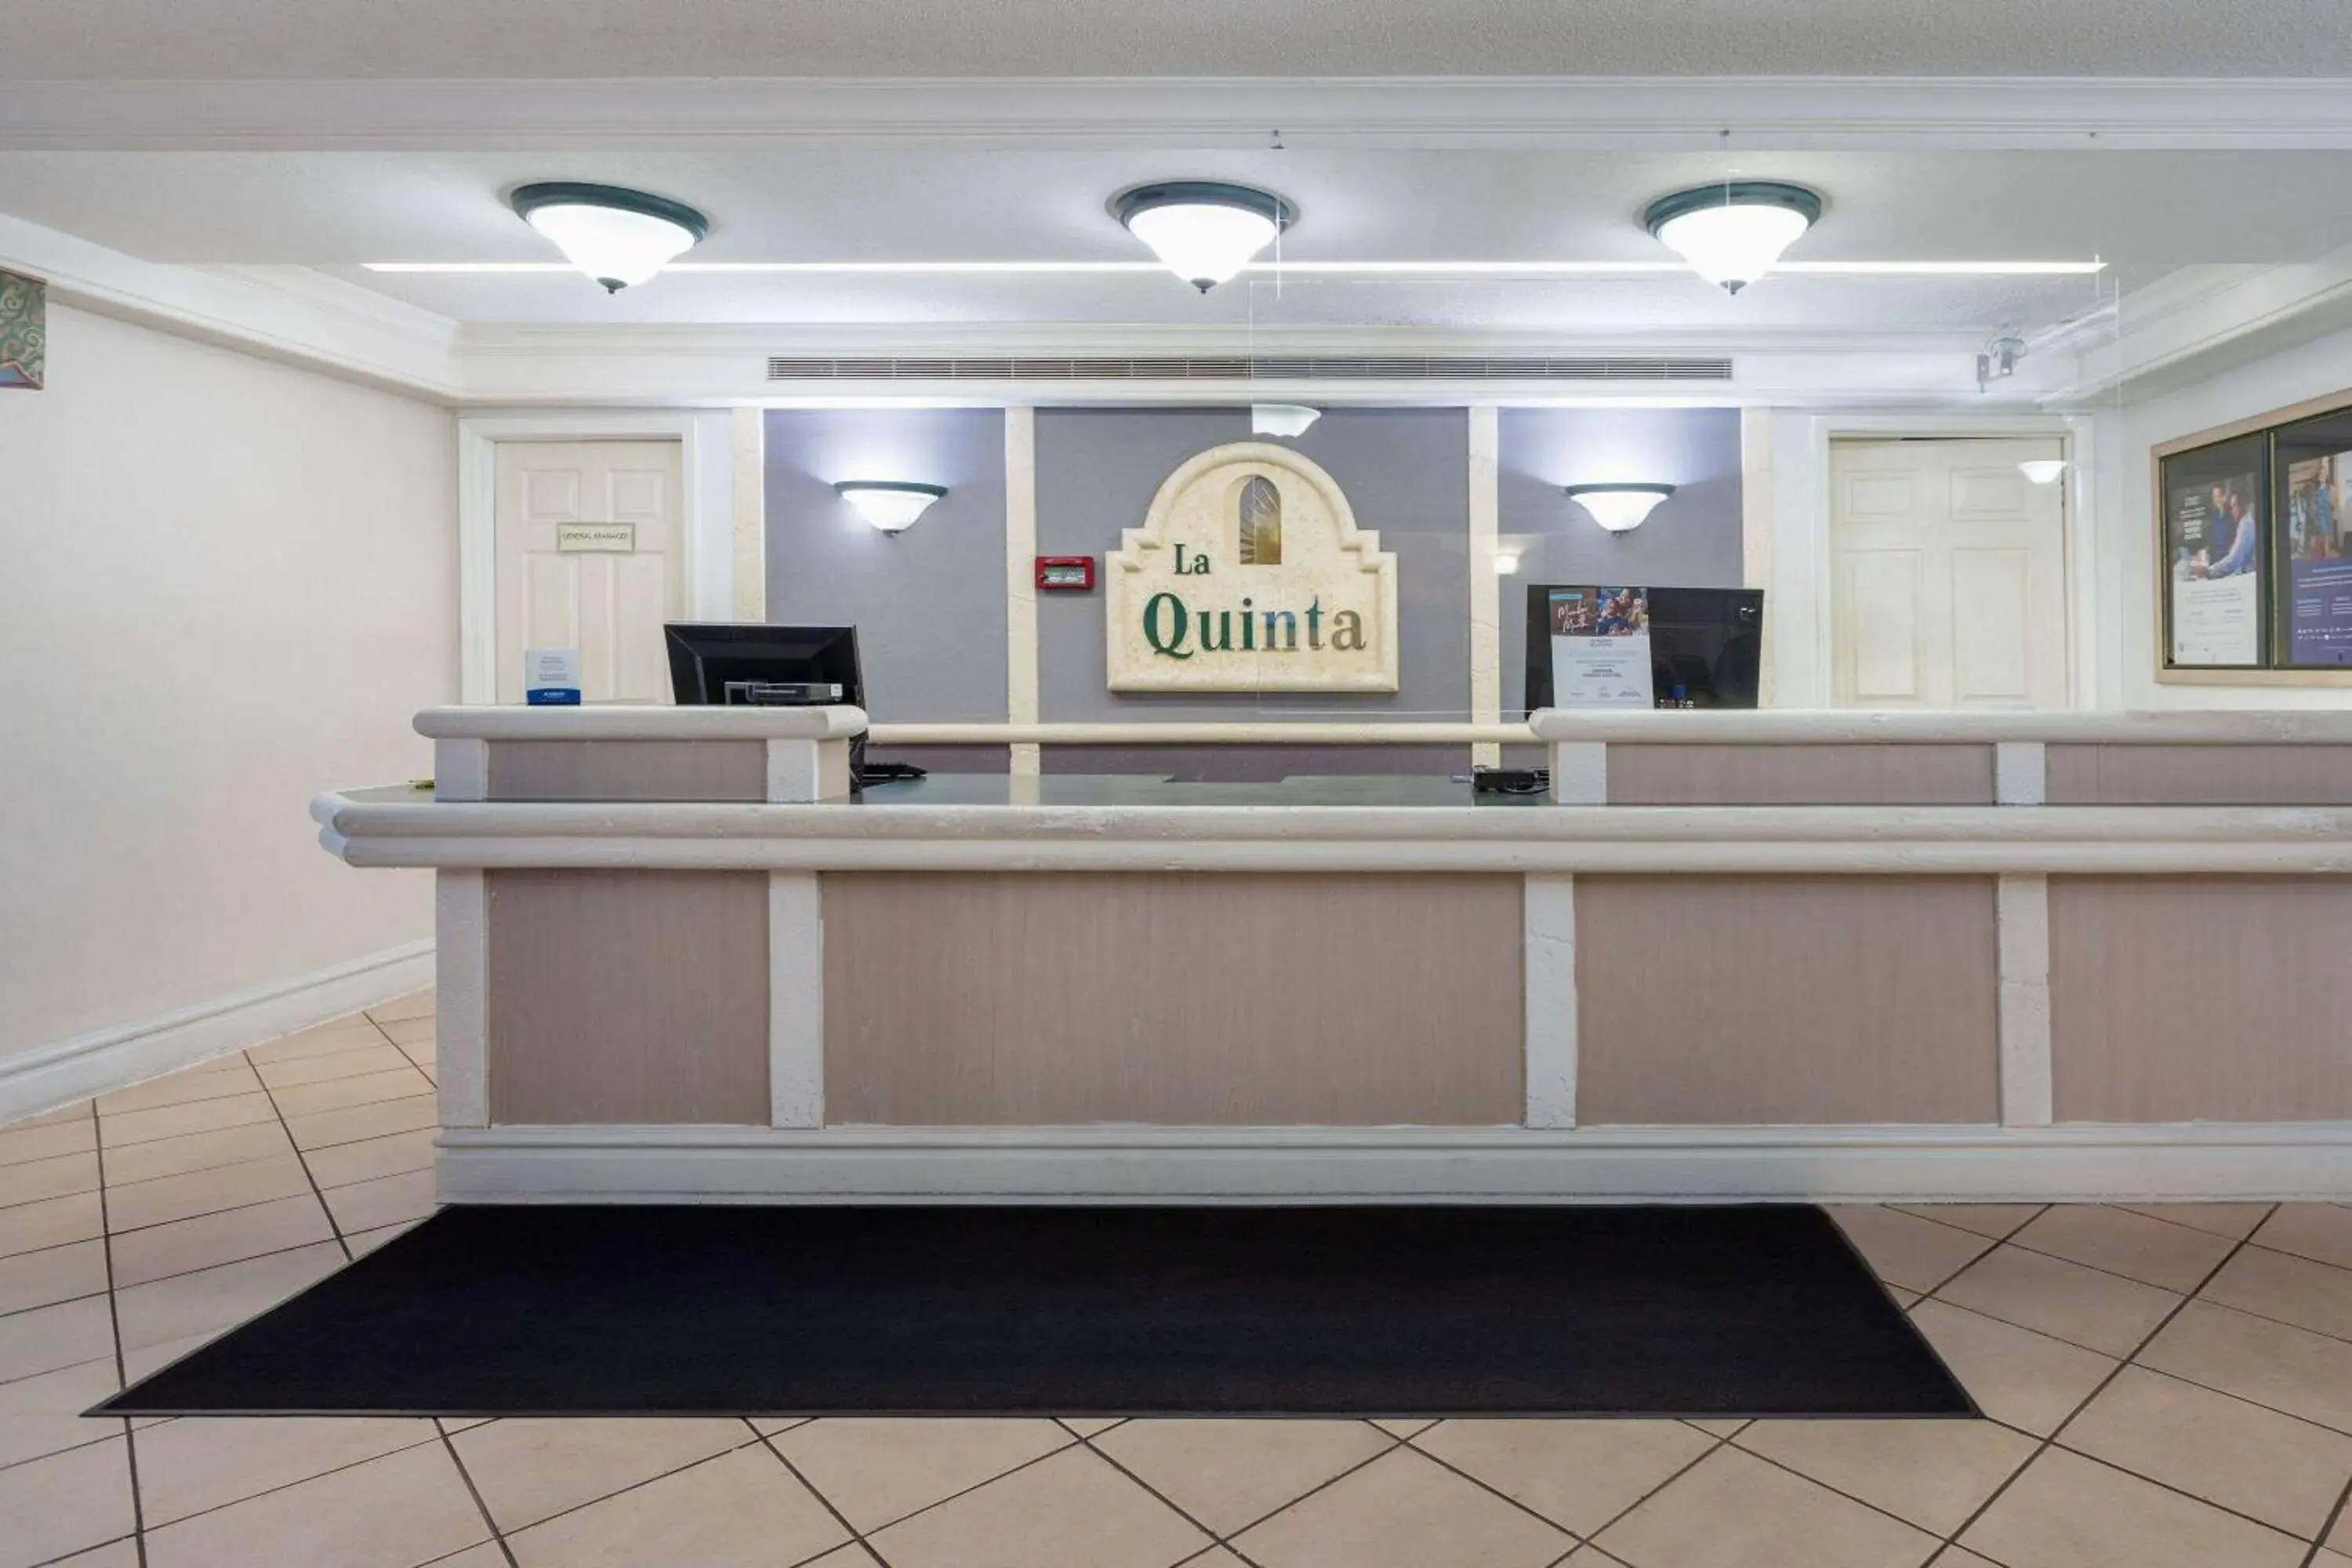 Lobby or reception, Lobby/Reception in La Quinta Inn by Wyndham Pensacola